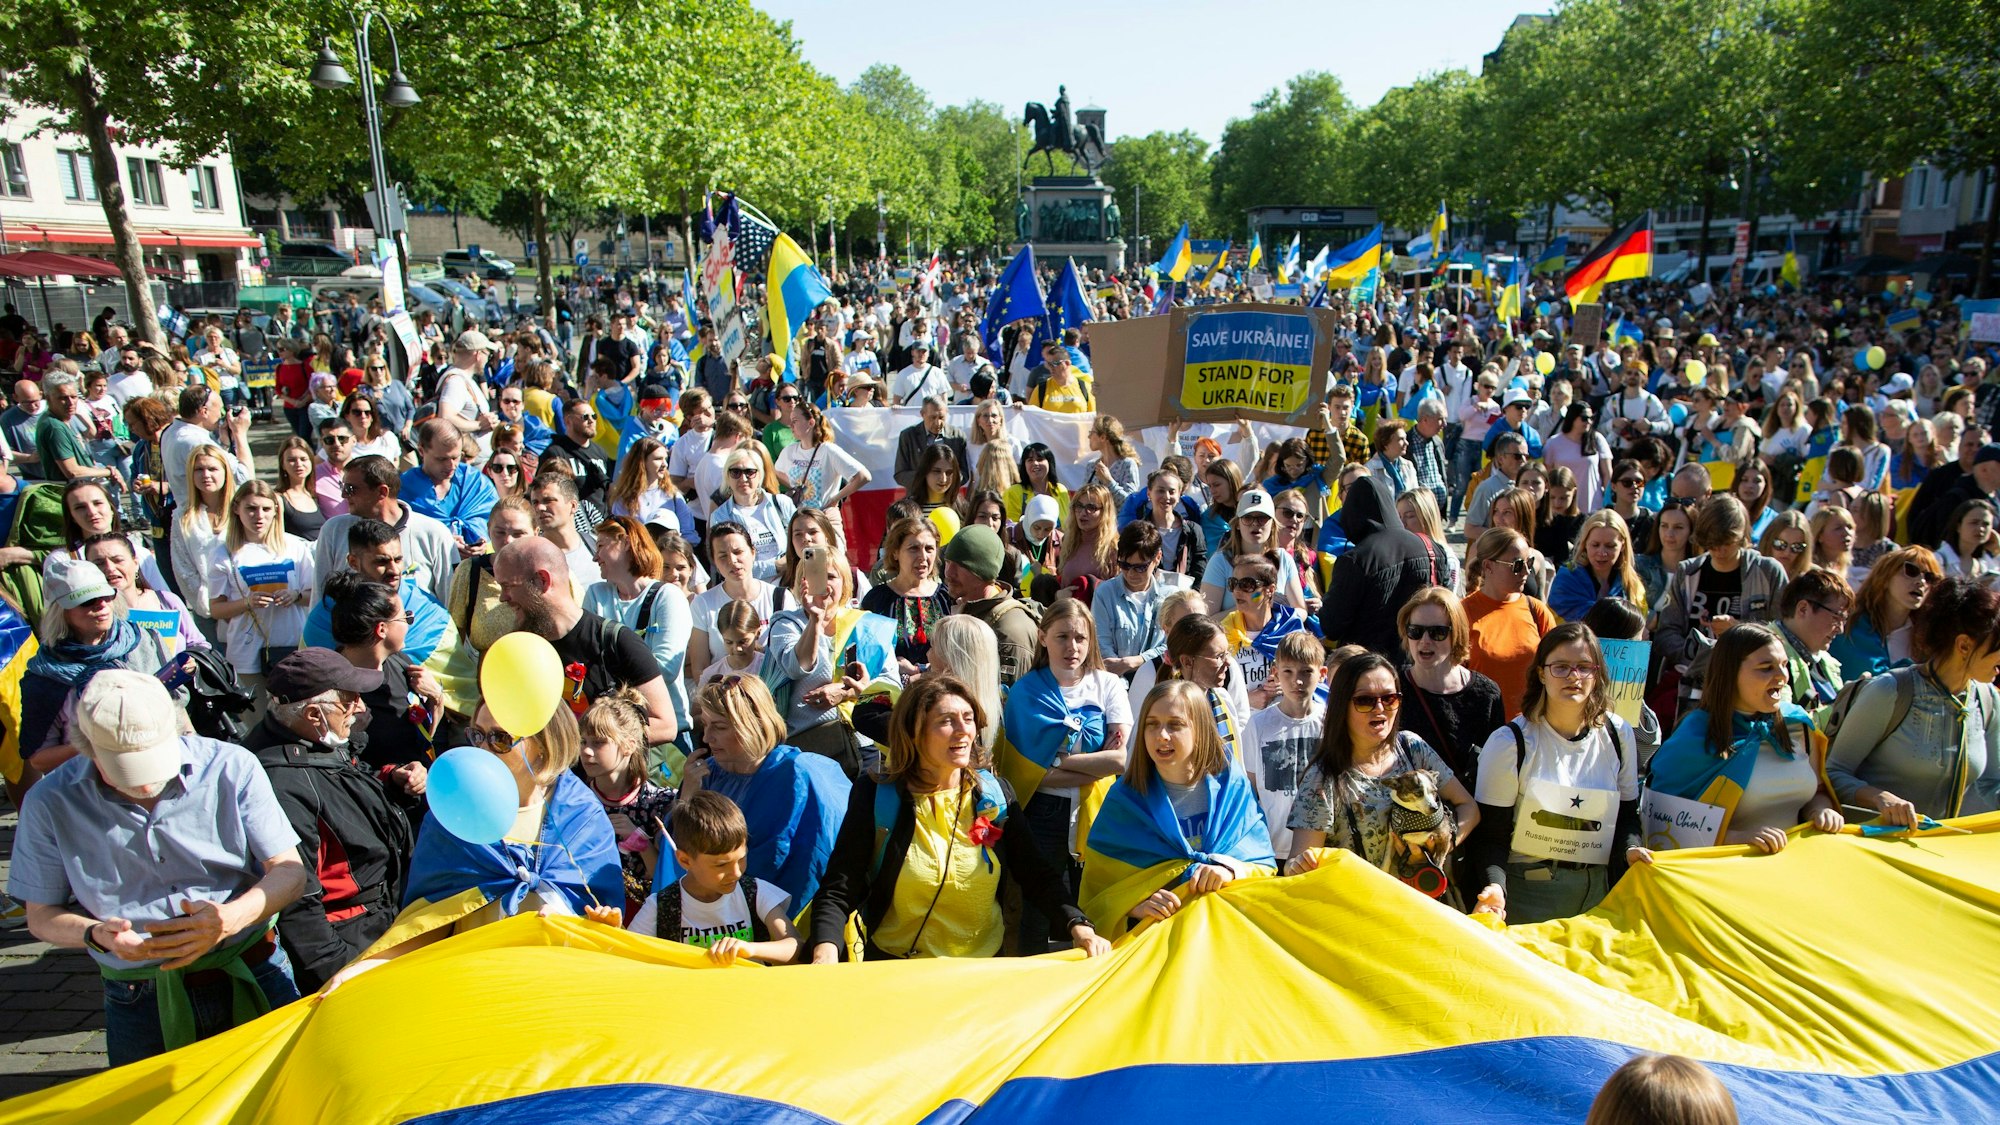 Bei einer Demo in Köln wird ein Banner in den Farben der ukrainischen Flagge gehalten.